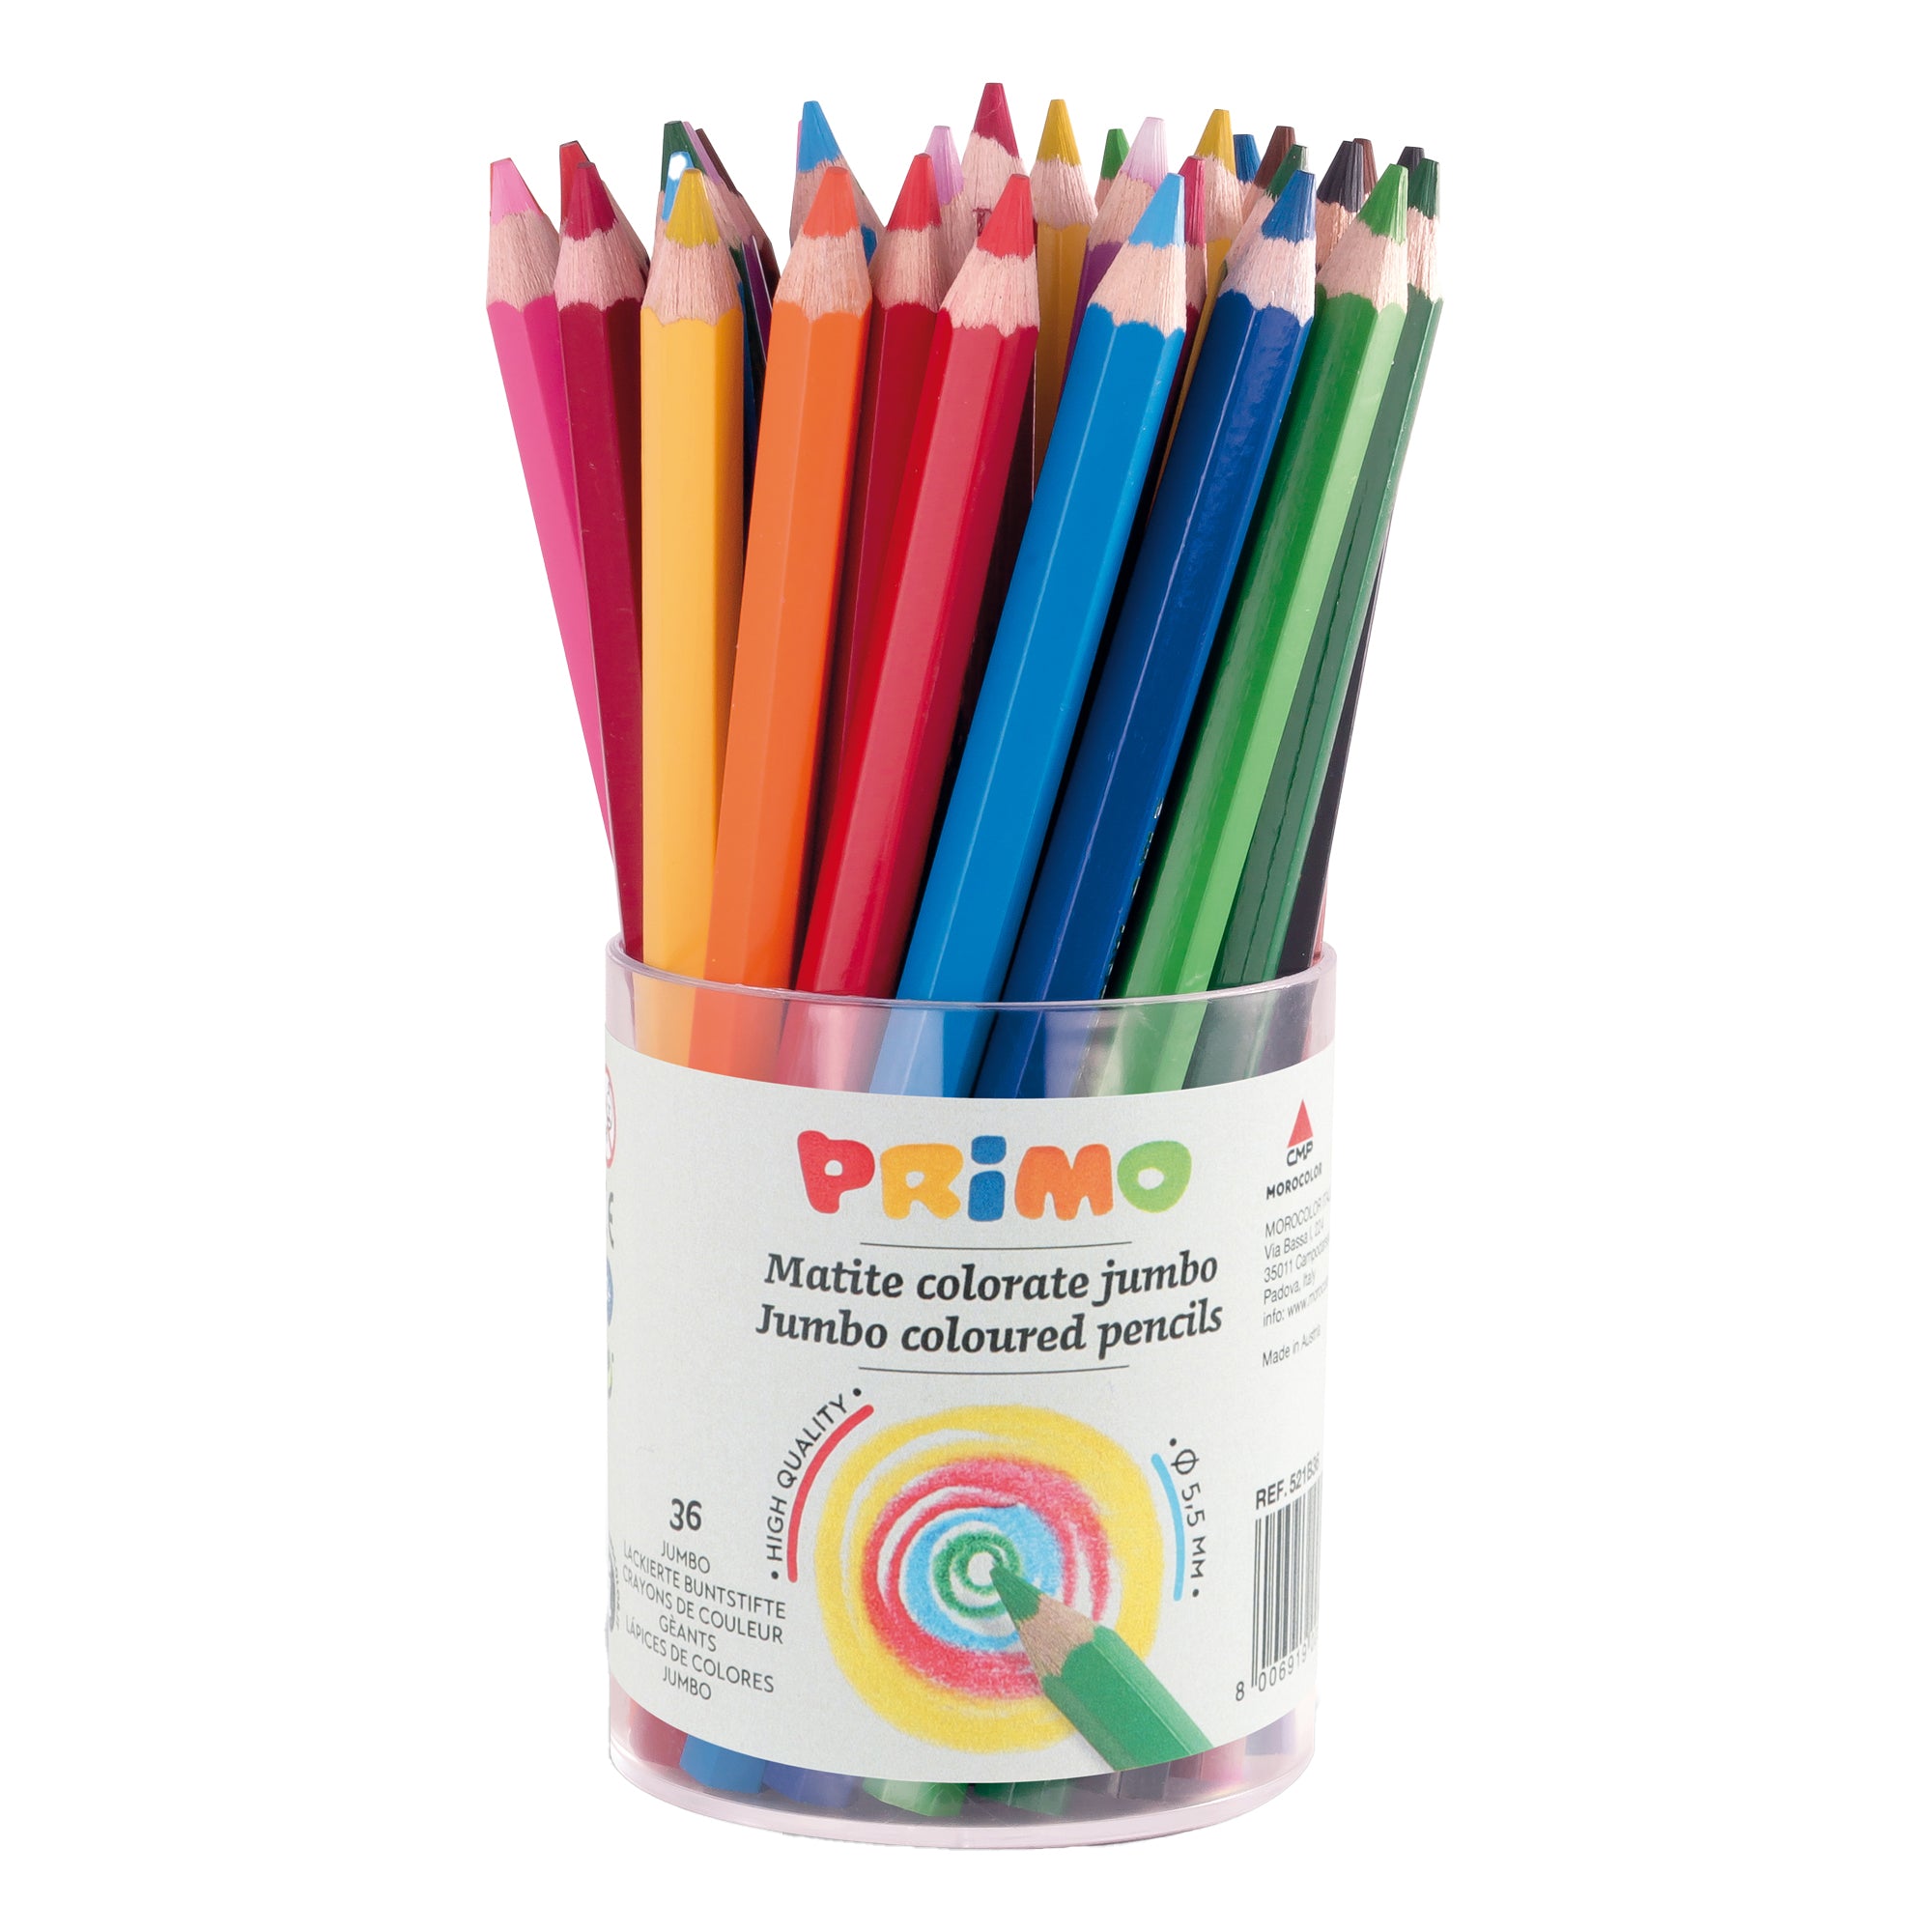 primo-morocolor-barattolo-36-pastelli-colorati-maxi-jumbo-100-fsc-12-colori-primo